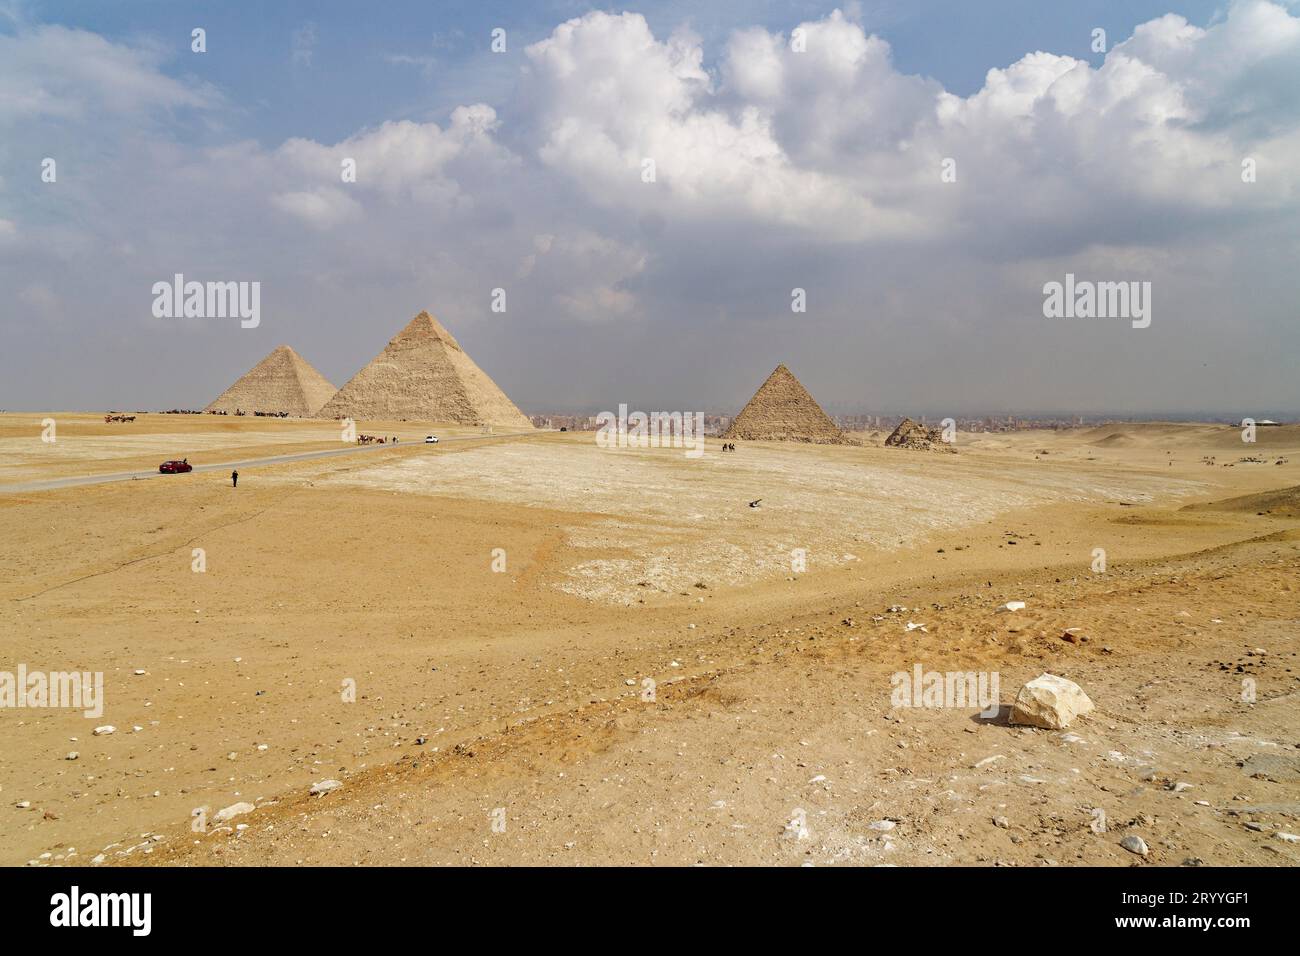 Pyramide de Cheops, pyramide de Chephren, pyramide de Mykerinos dans le désert, sable, chaleur, nuages, Gizeh, Égypte Banque D'Images